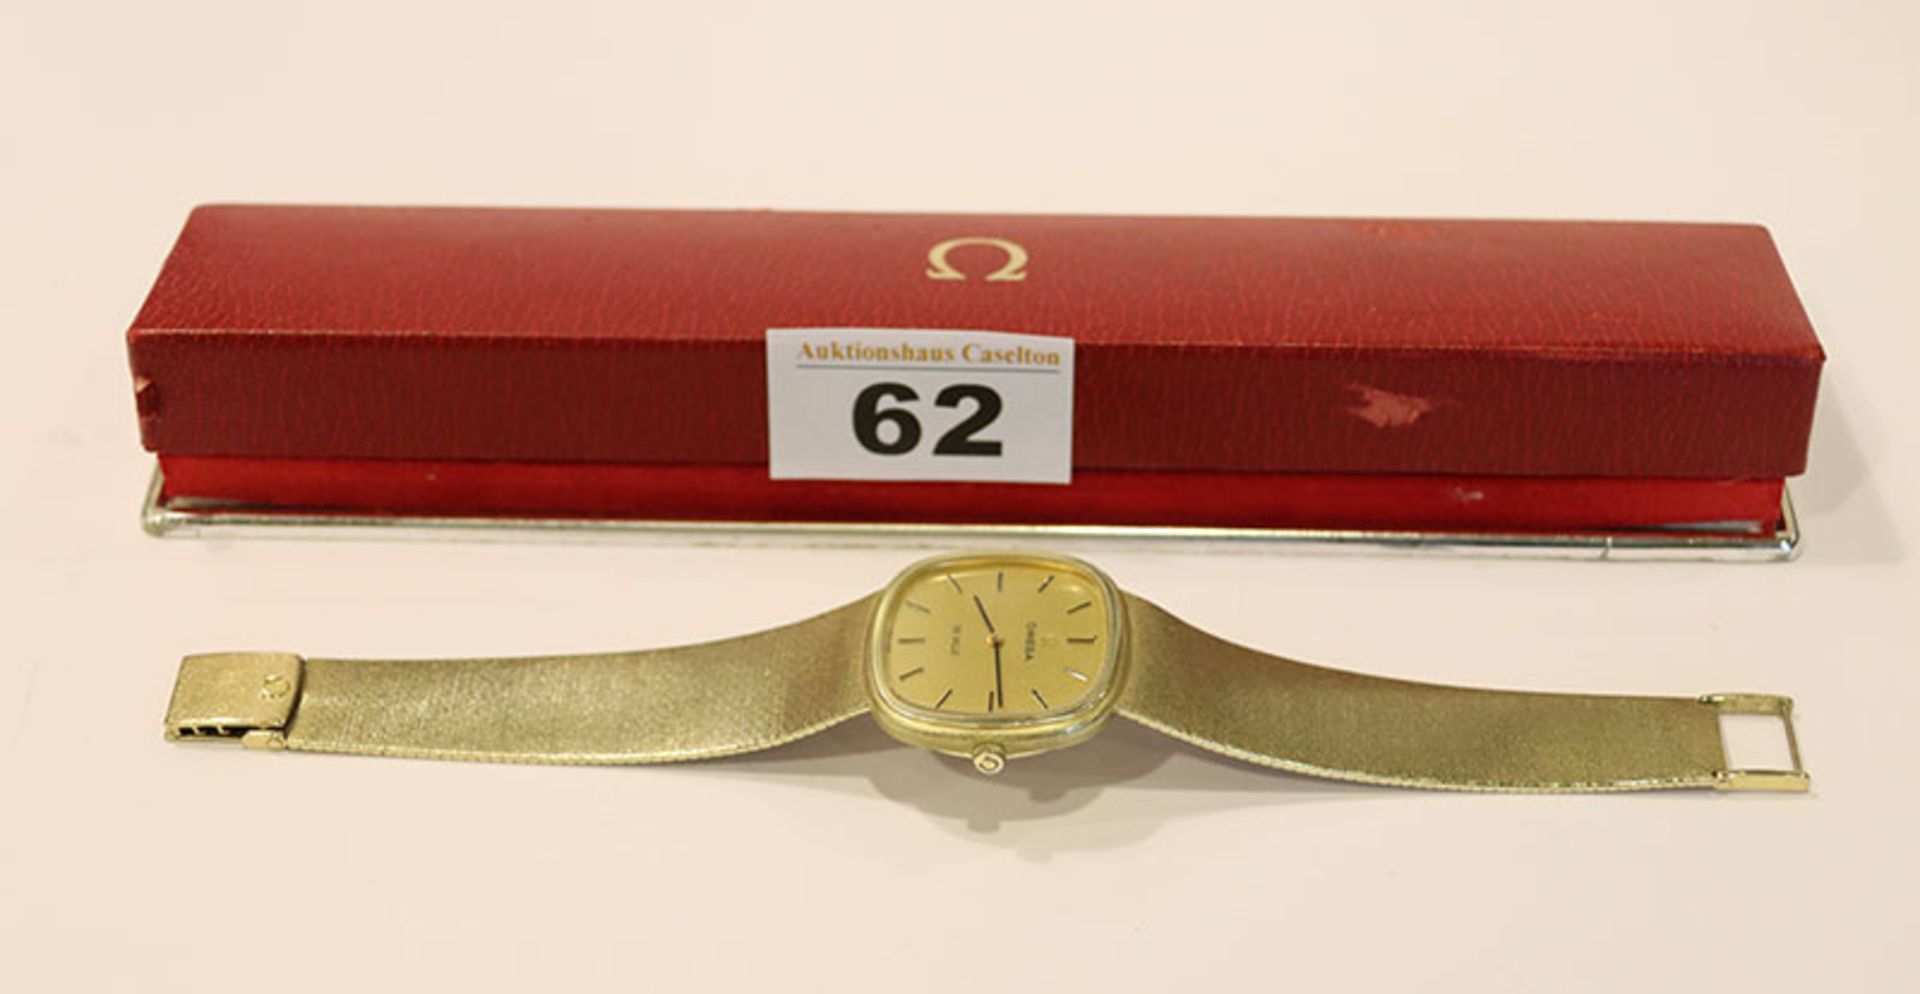 Omega De Ville Herren-Armbanduhr 14 k Gelbgold, 64 gr. Gewicht ohne Werk, intakt, in Originaletui